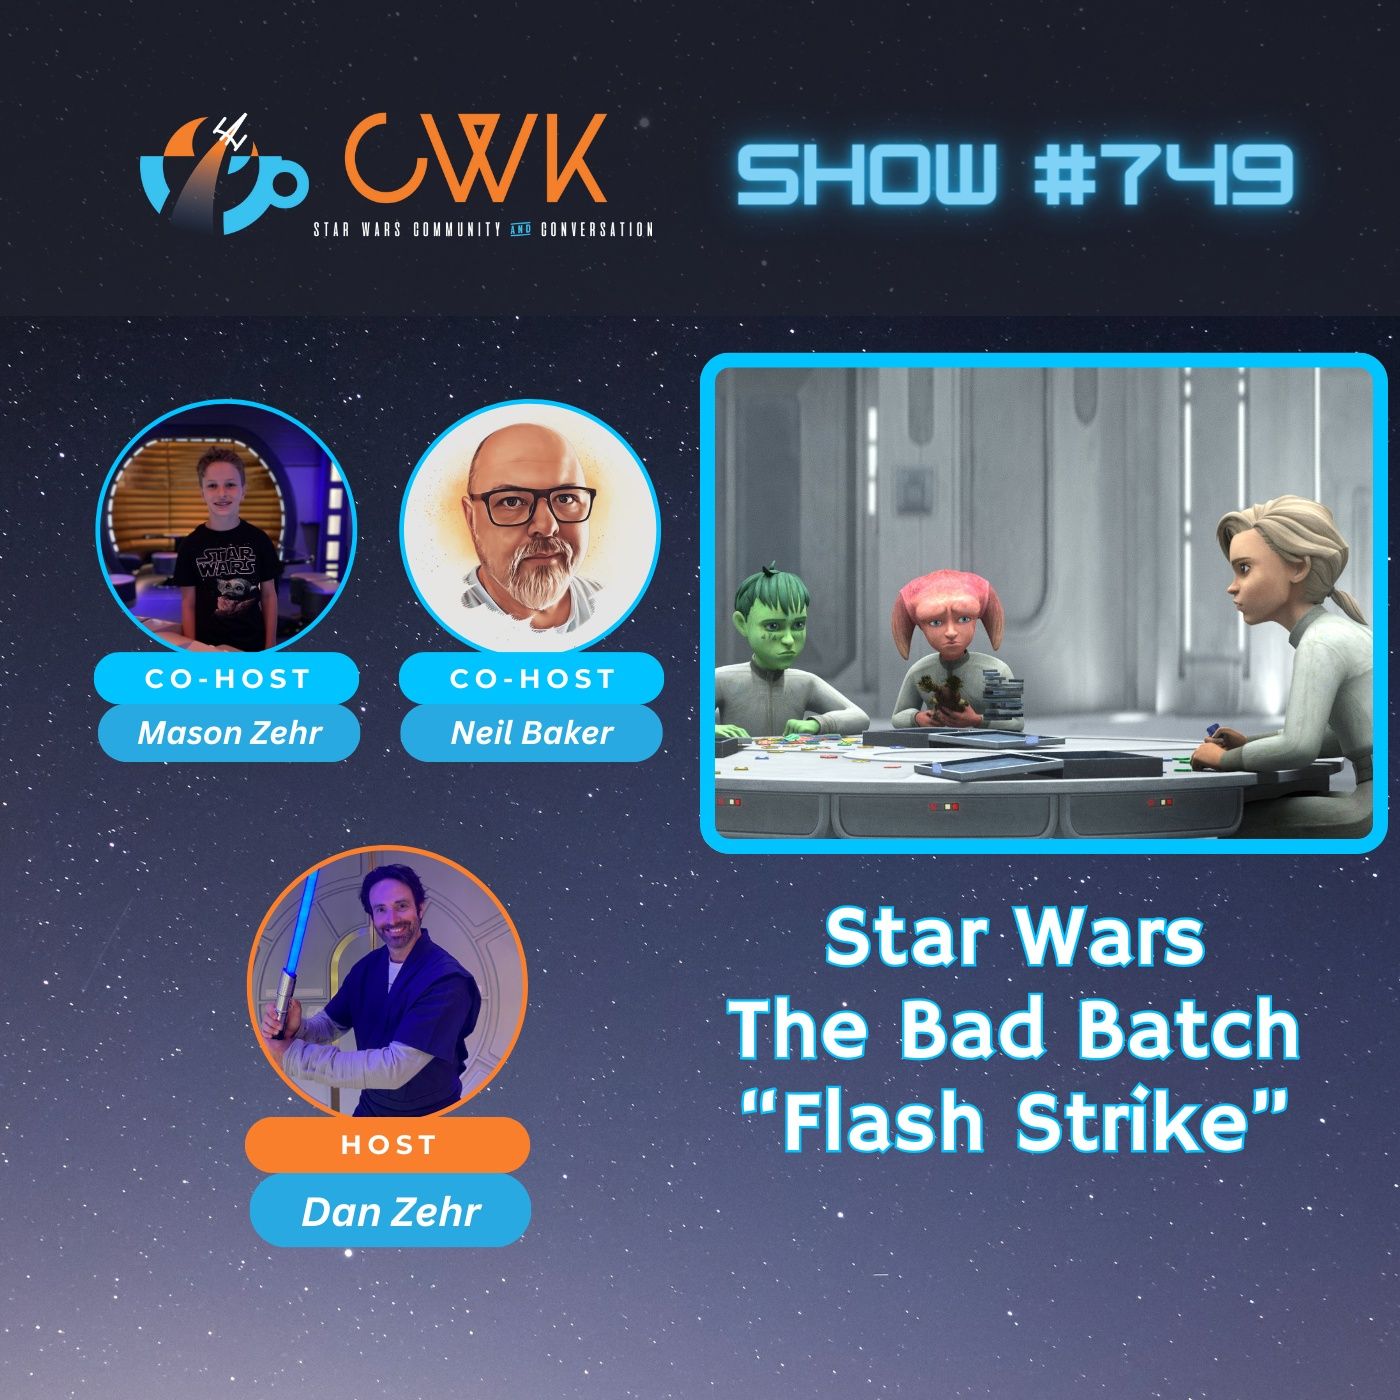 CWK Show #749: The Bad Batch- “Flash Strike